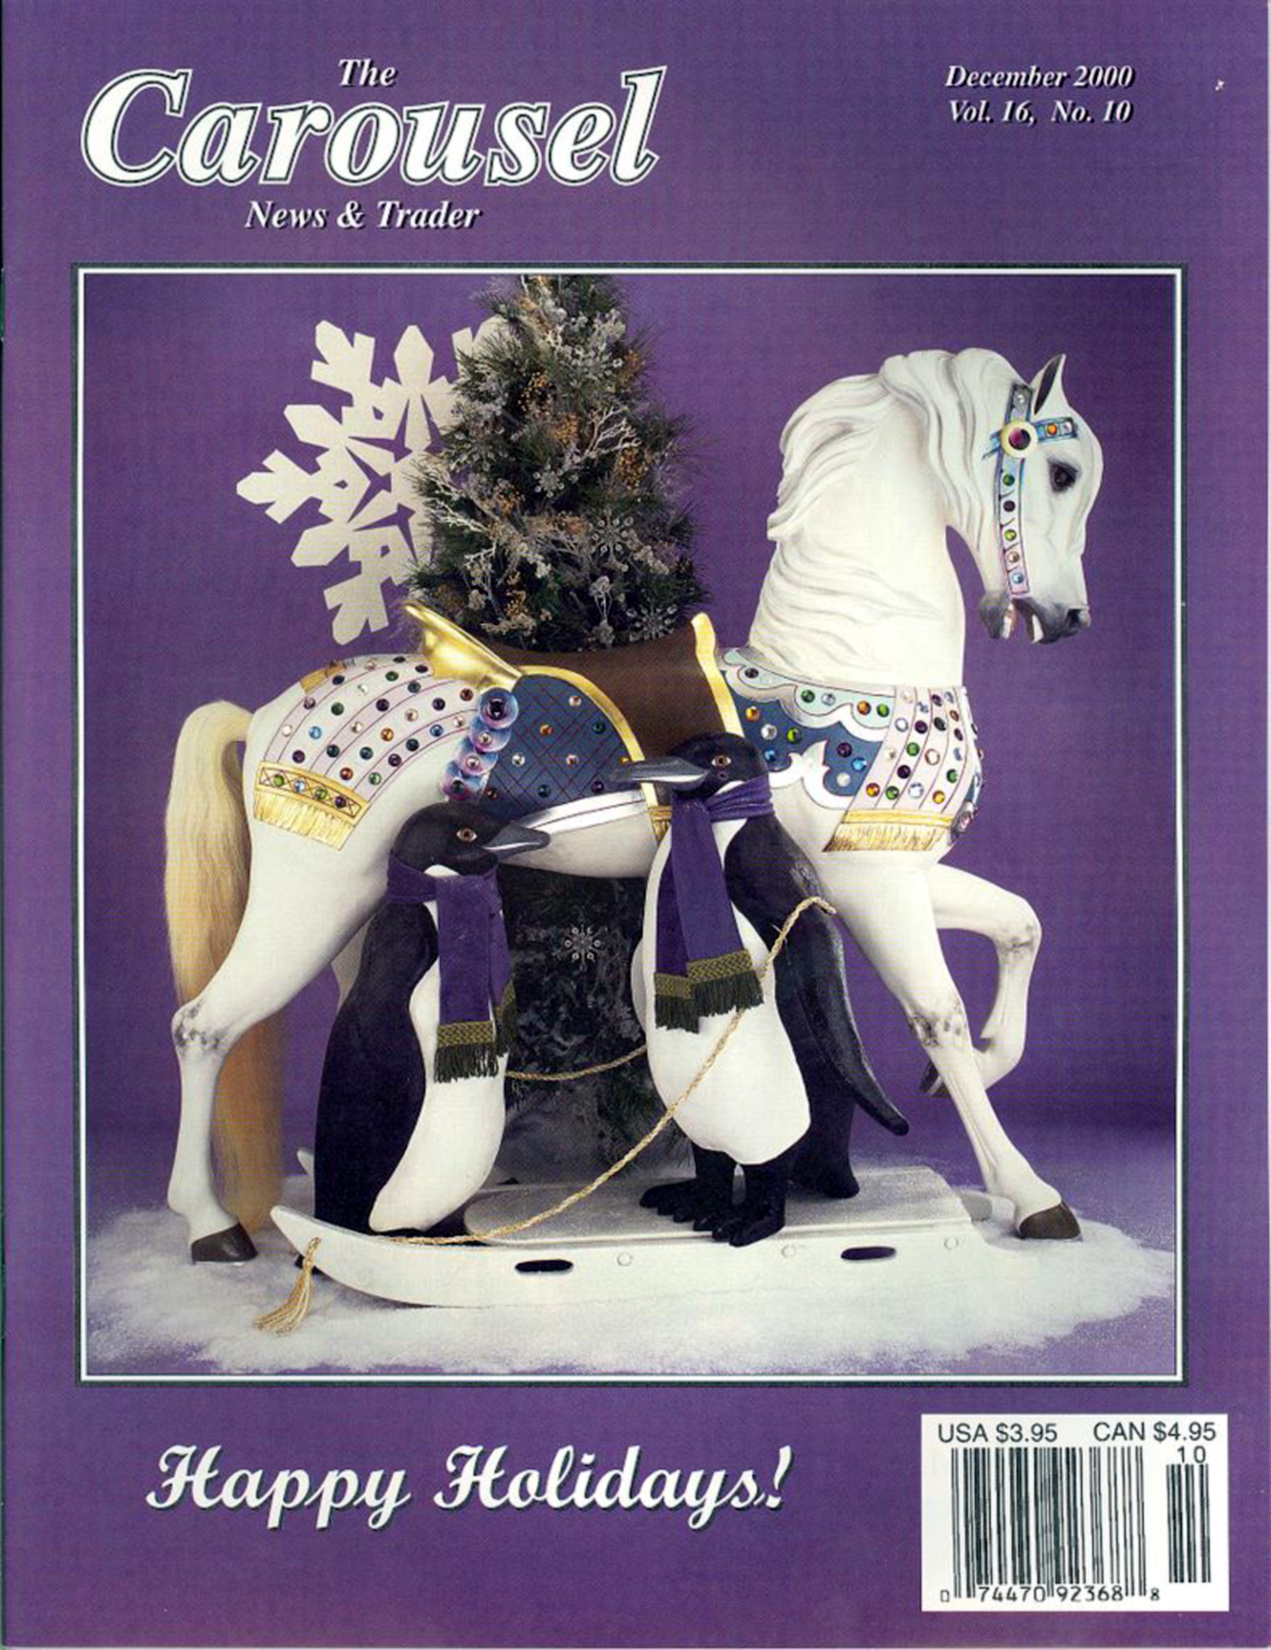 Issue No. 10, Vol. 16 – December 2000